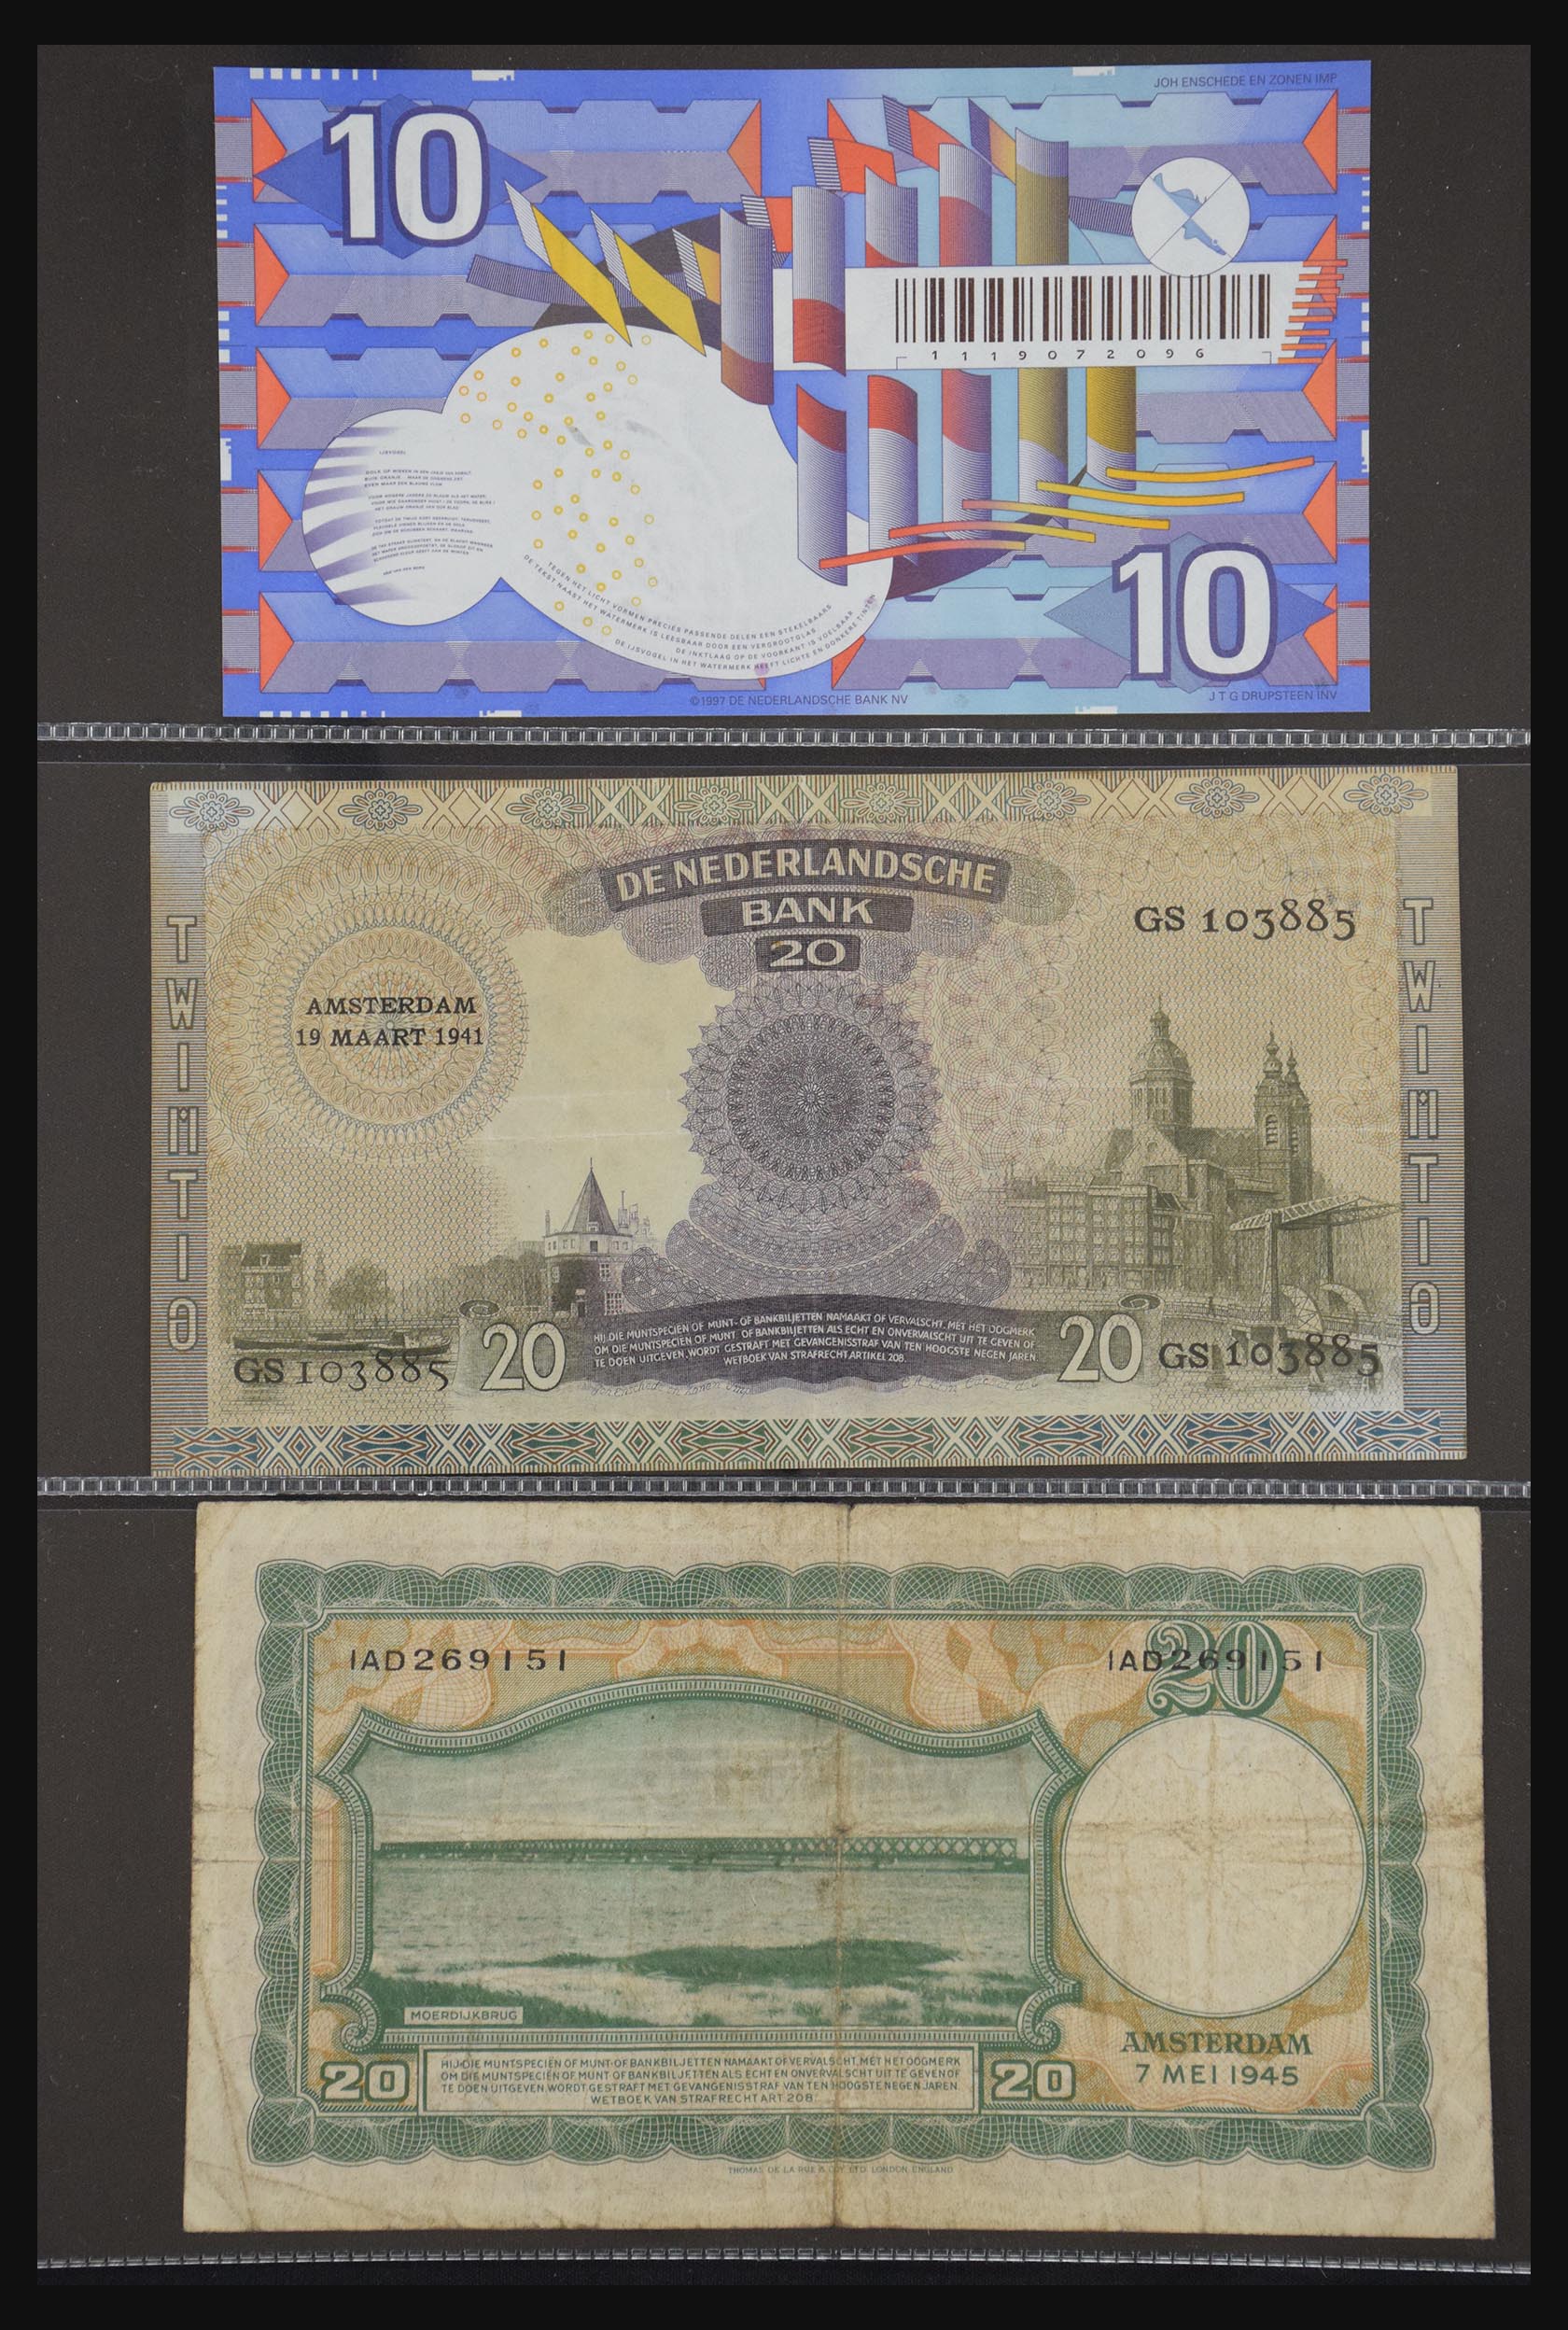 29404 026 - 29404 Netherlands banknotes 1924-1997.